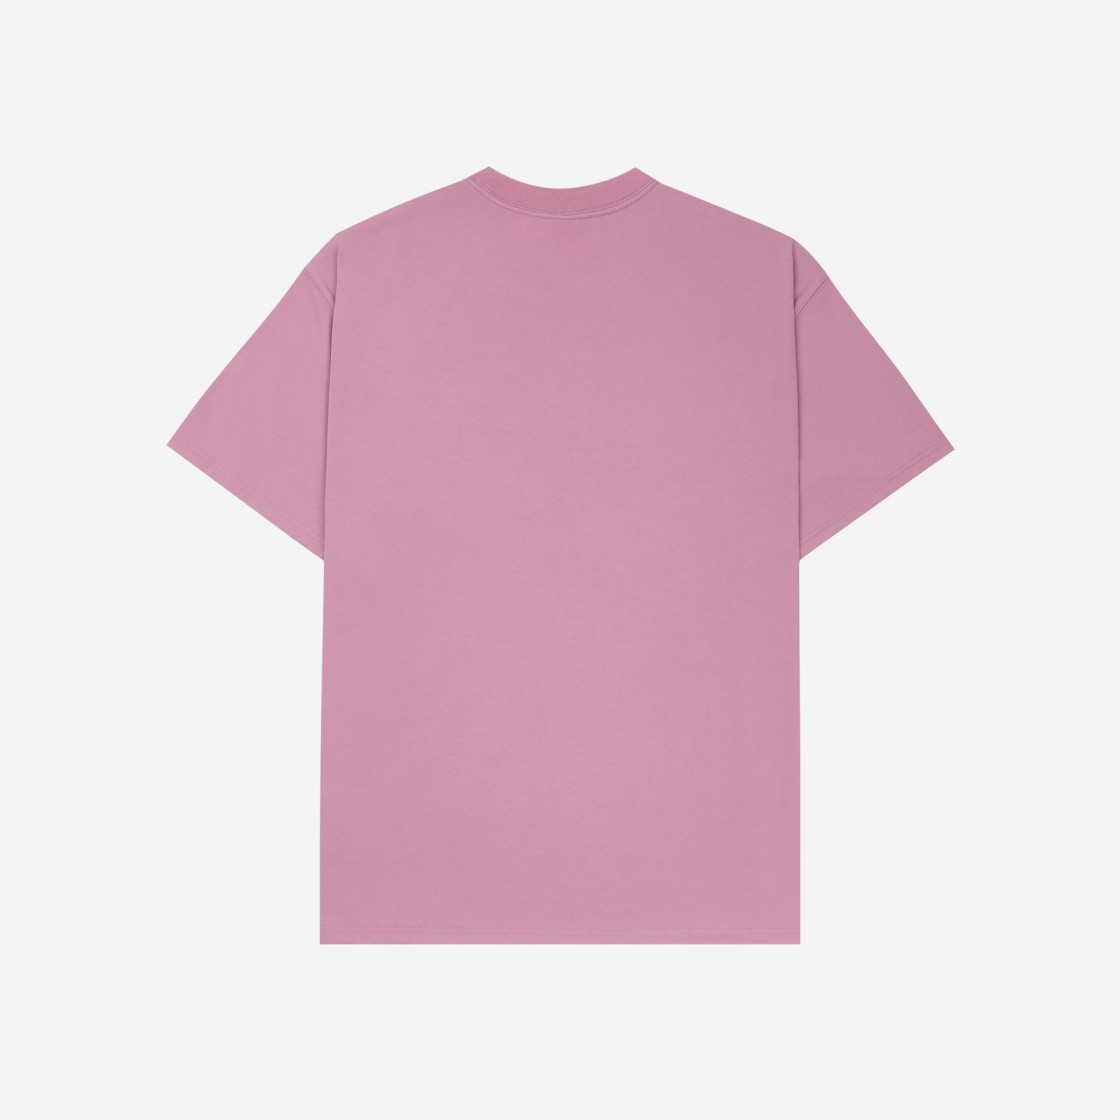 나이키 NRG ACG 와일랜드 티셔츠 엘리멘탈 핑크 - 아시아 DC5359-698